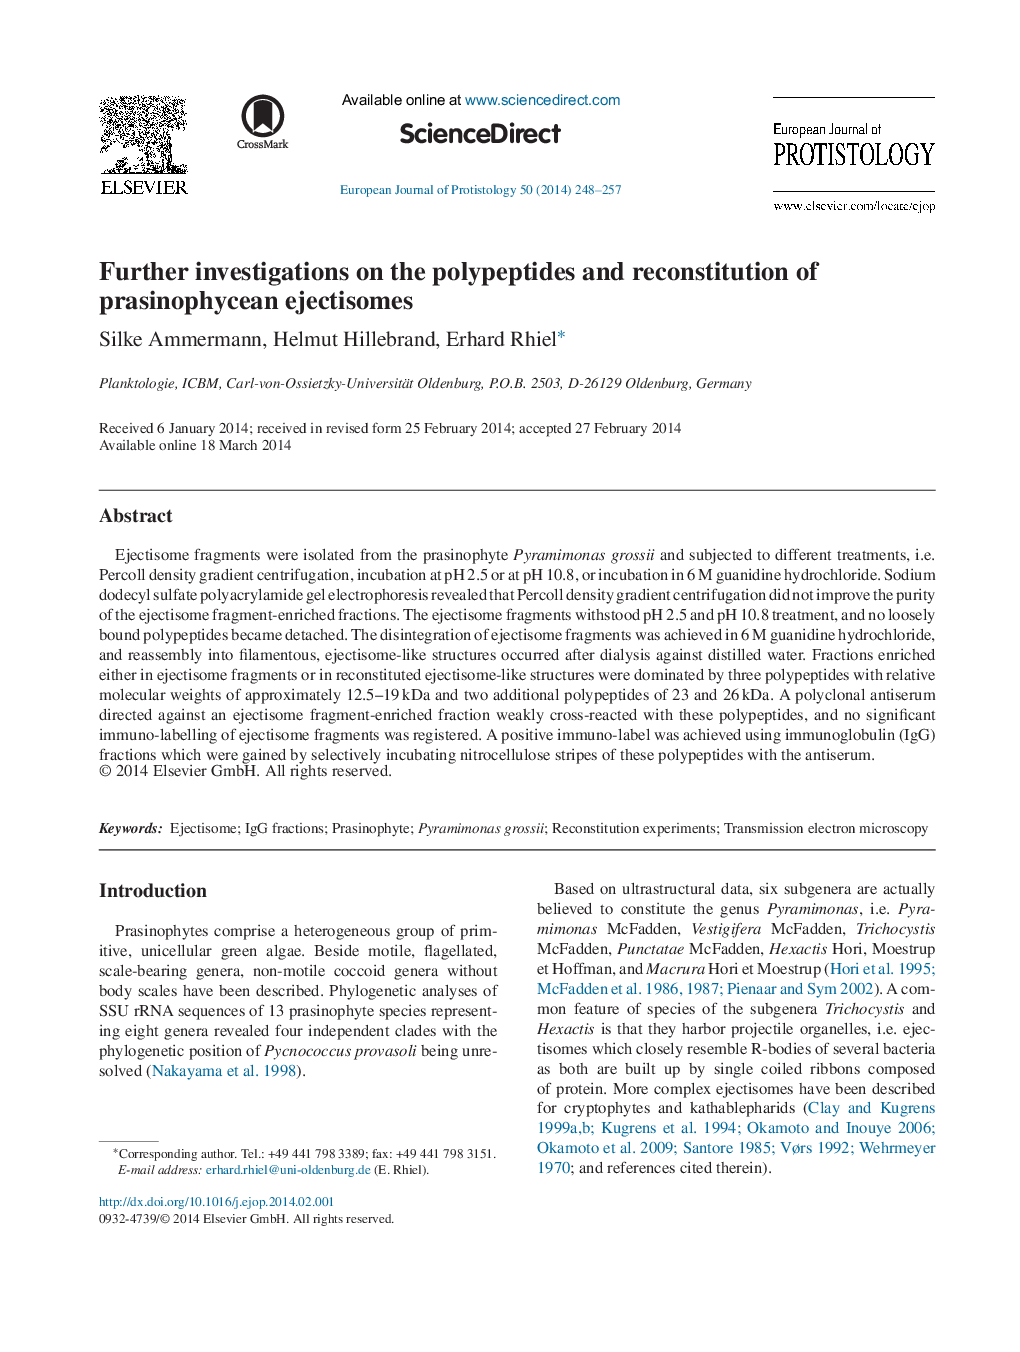 تحقیقات بیشتر در مورد پلیپپتید ها و بازسازی عضله های پاستوریزه 